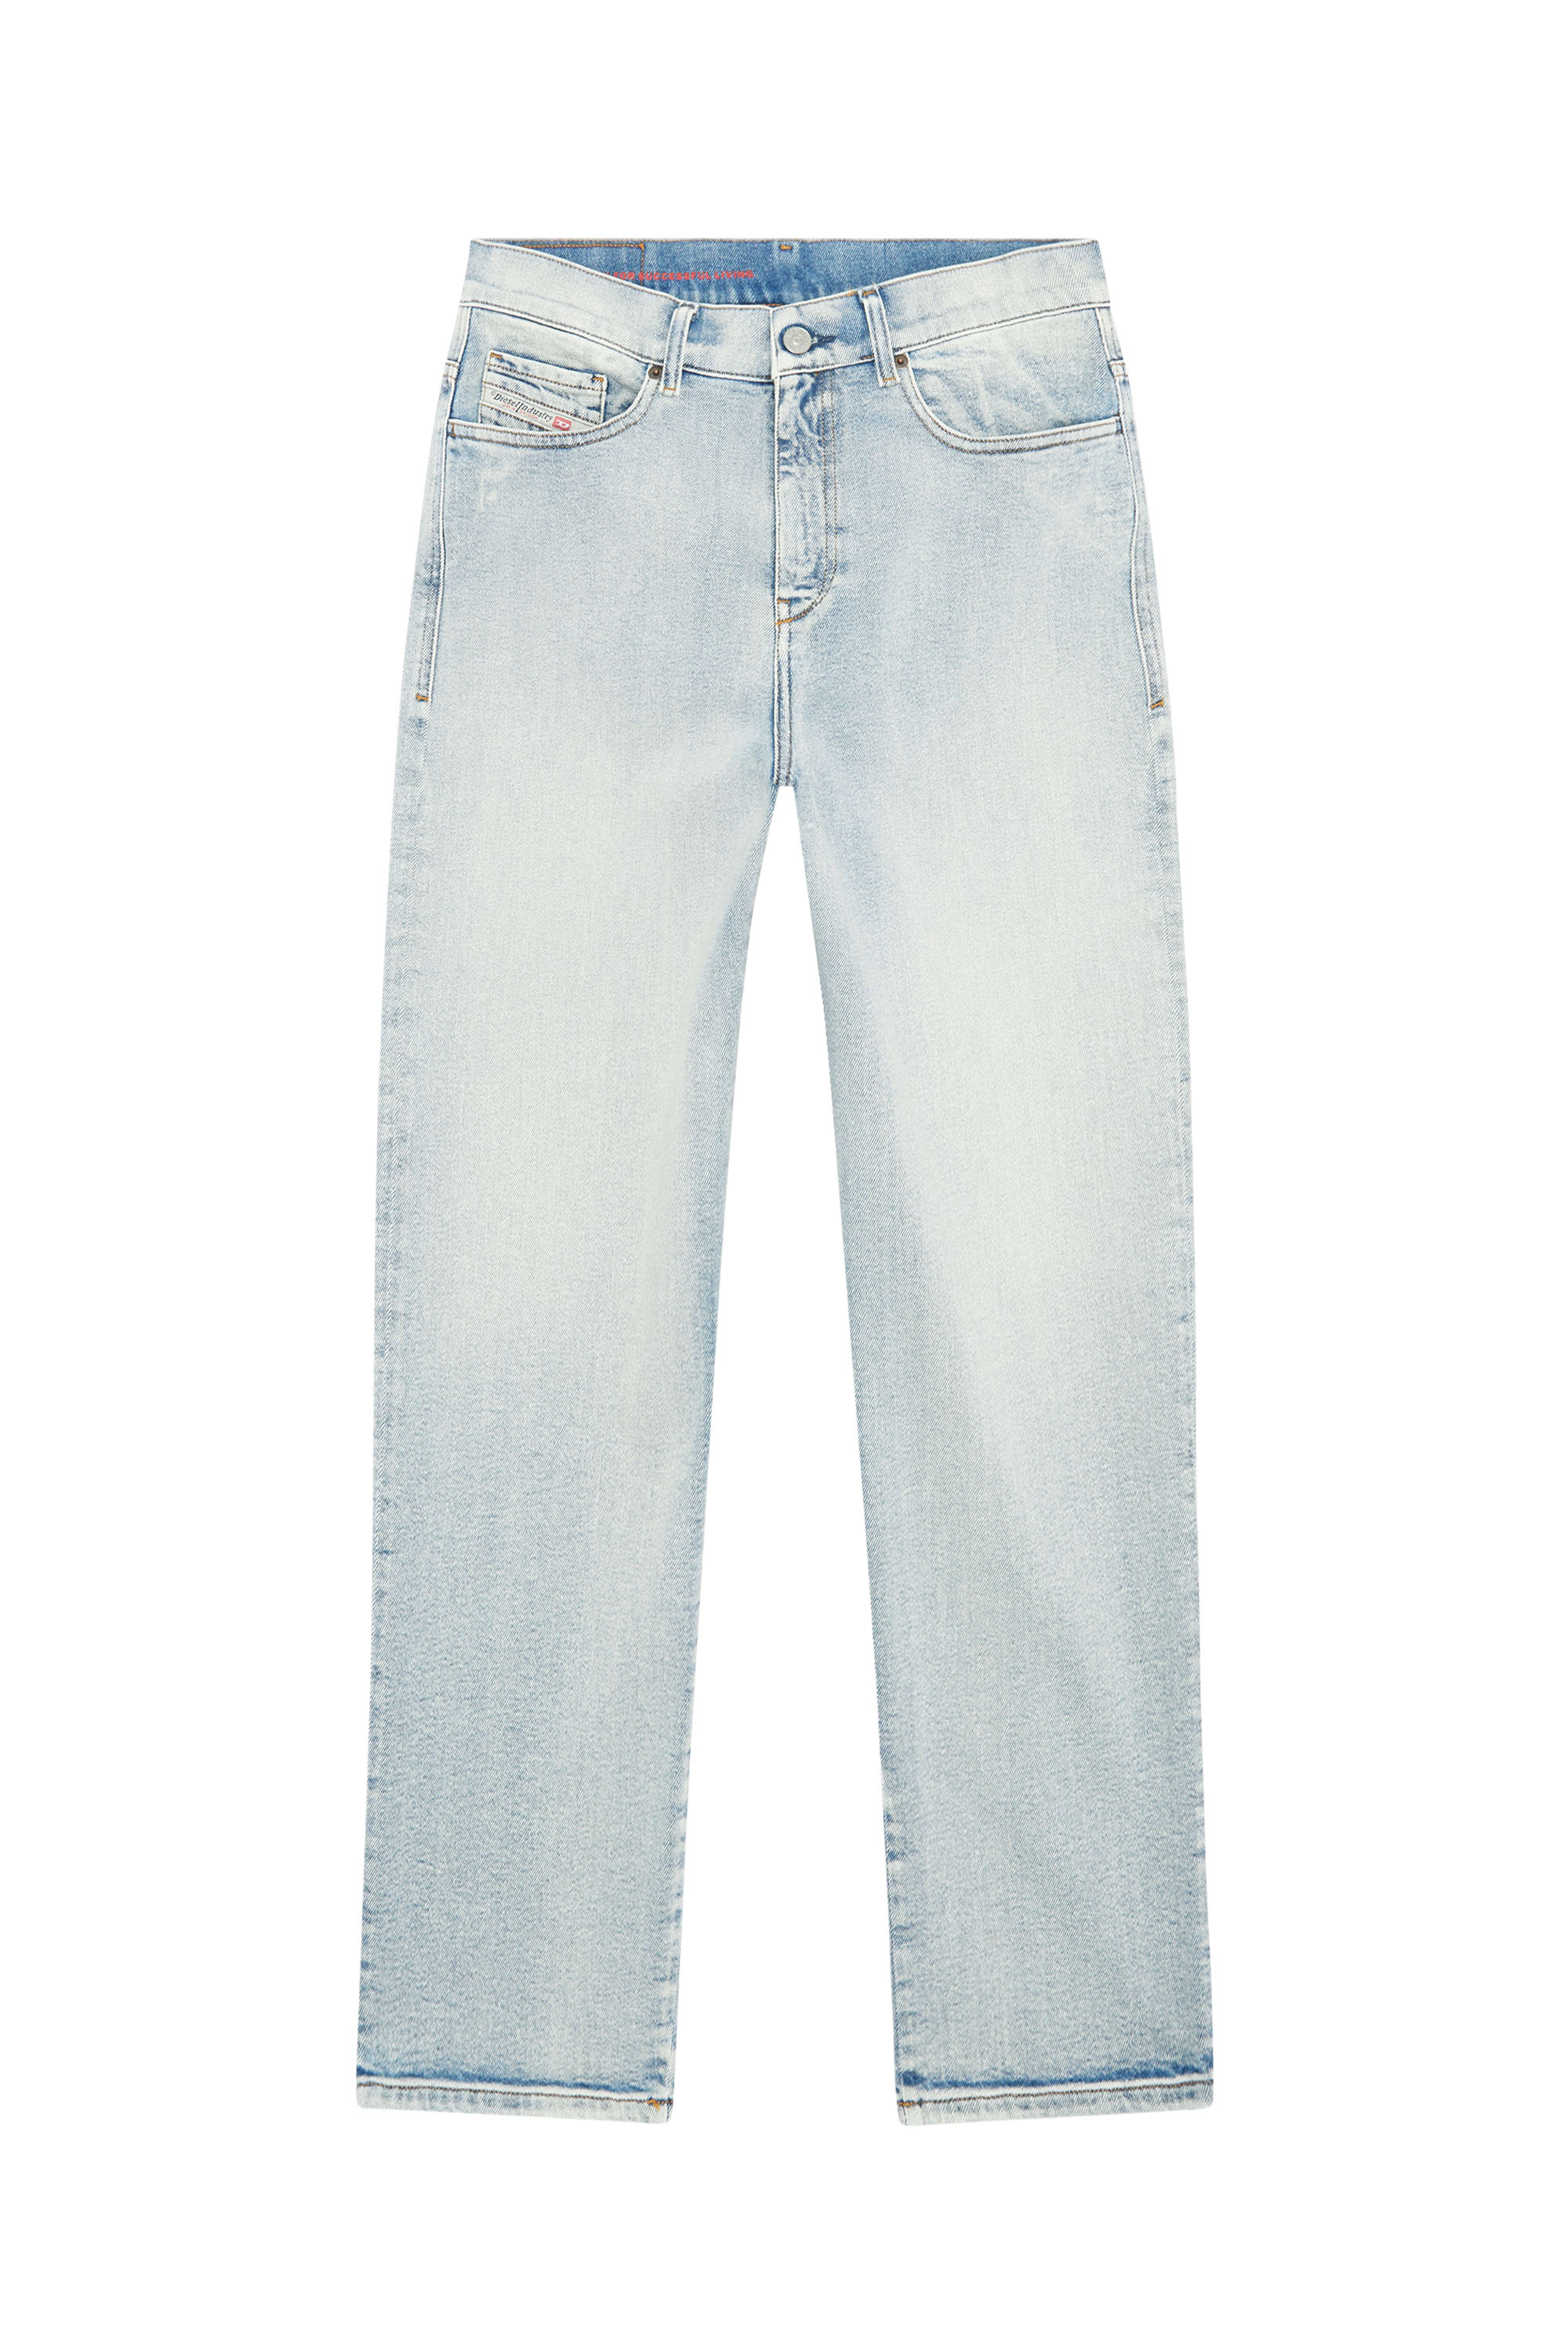 Boyfriend Jeans 2016 D-Air 9C08L, Hellblau - Jeans